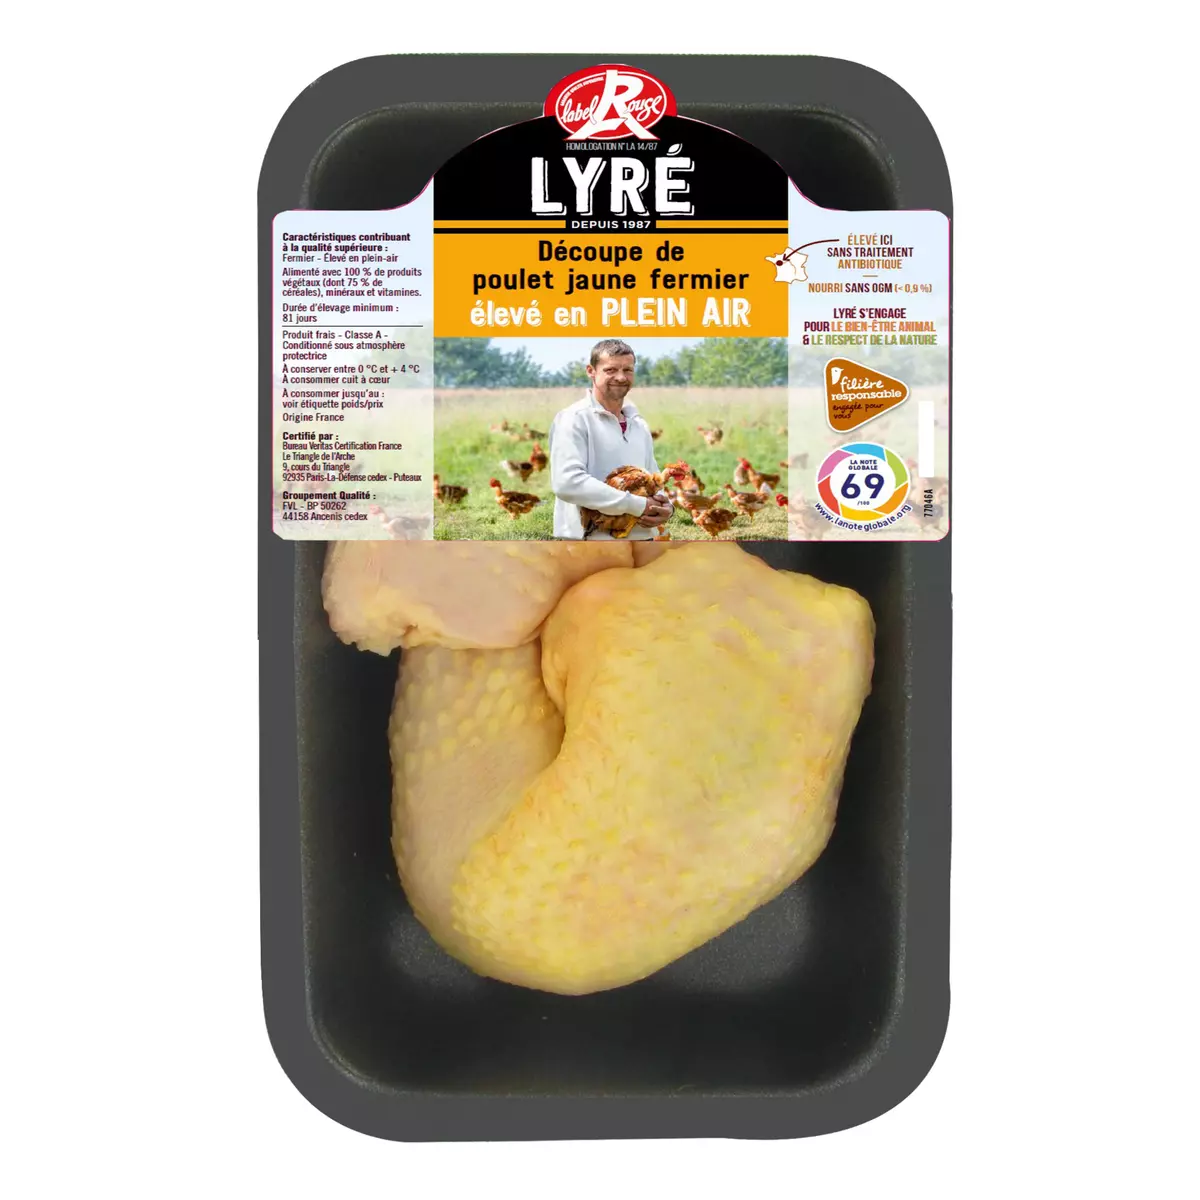 LYRE Cuisse de poulet jaune fermier label rouge 2 pièces 500g